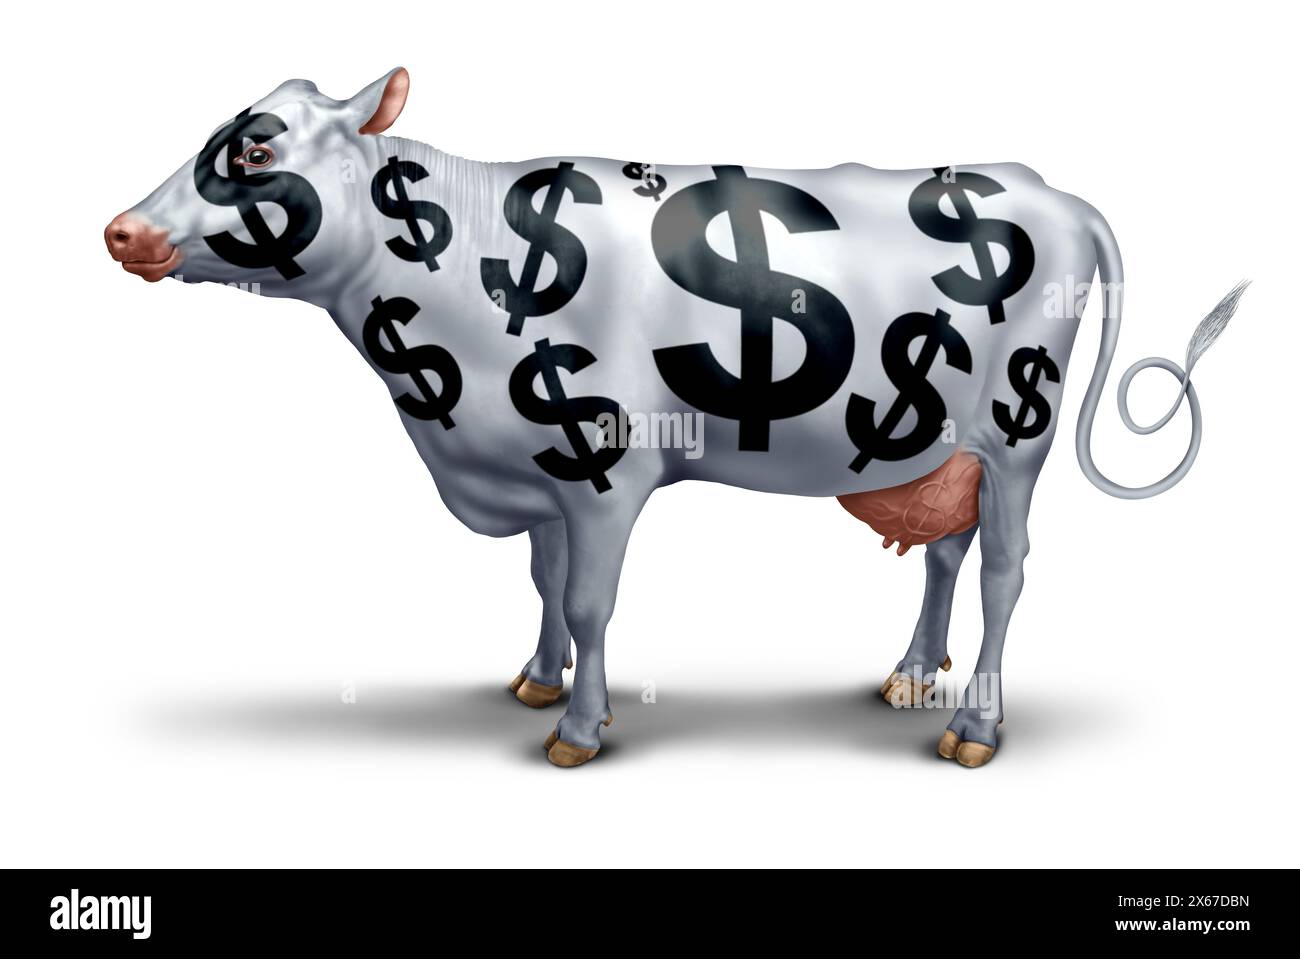 Symbole de réussite commerciale Cash Cow pour une entreprise rentable ou un service générant des profits et augmentant la richesse comme une métaphore de la rentabilité comme les vaches. Banque D'Images